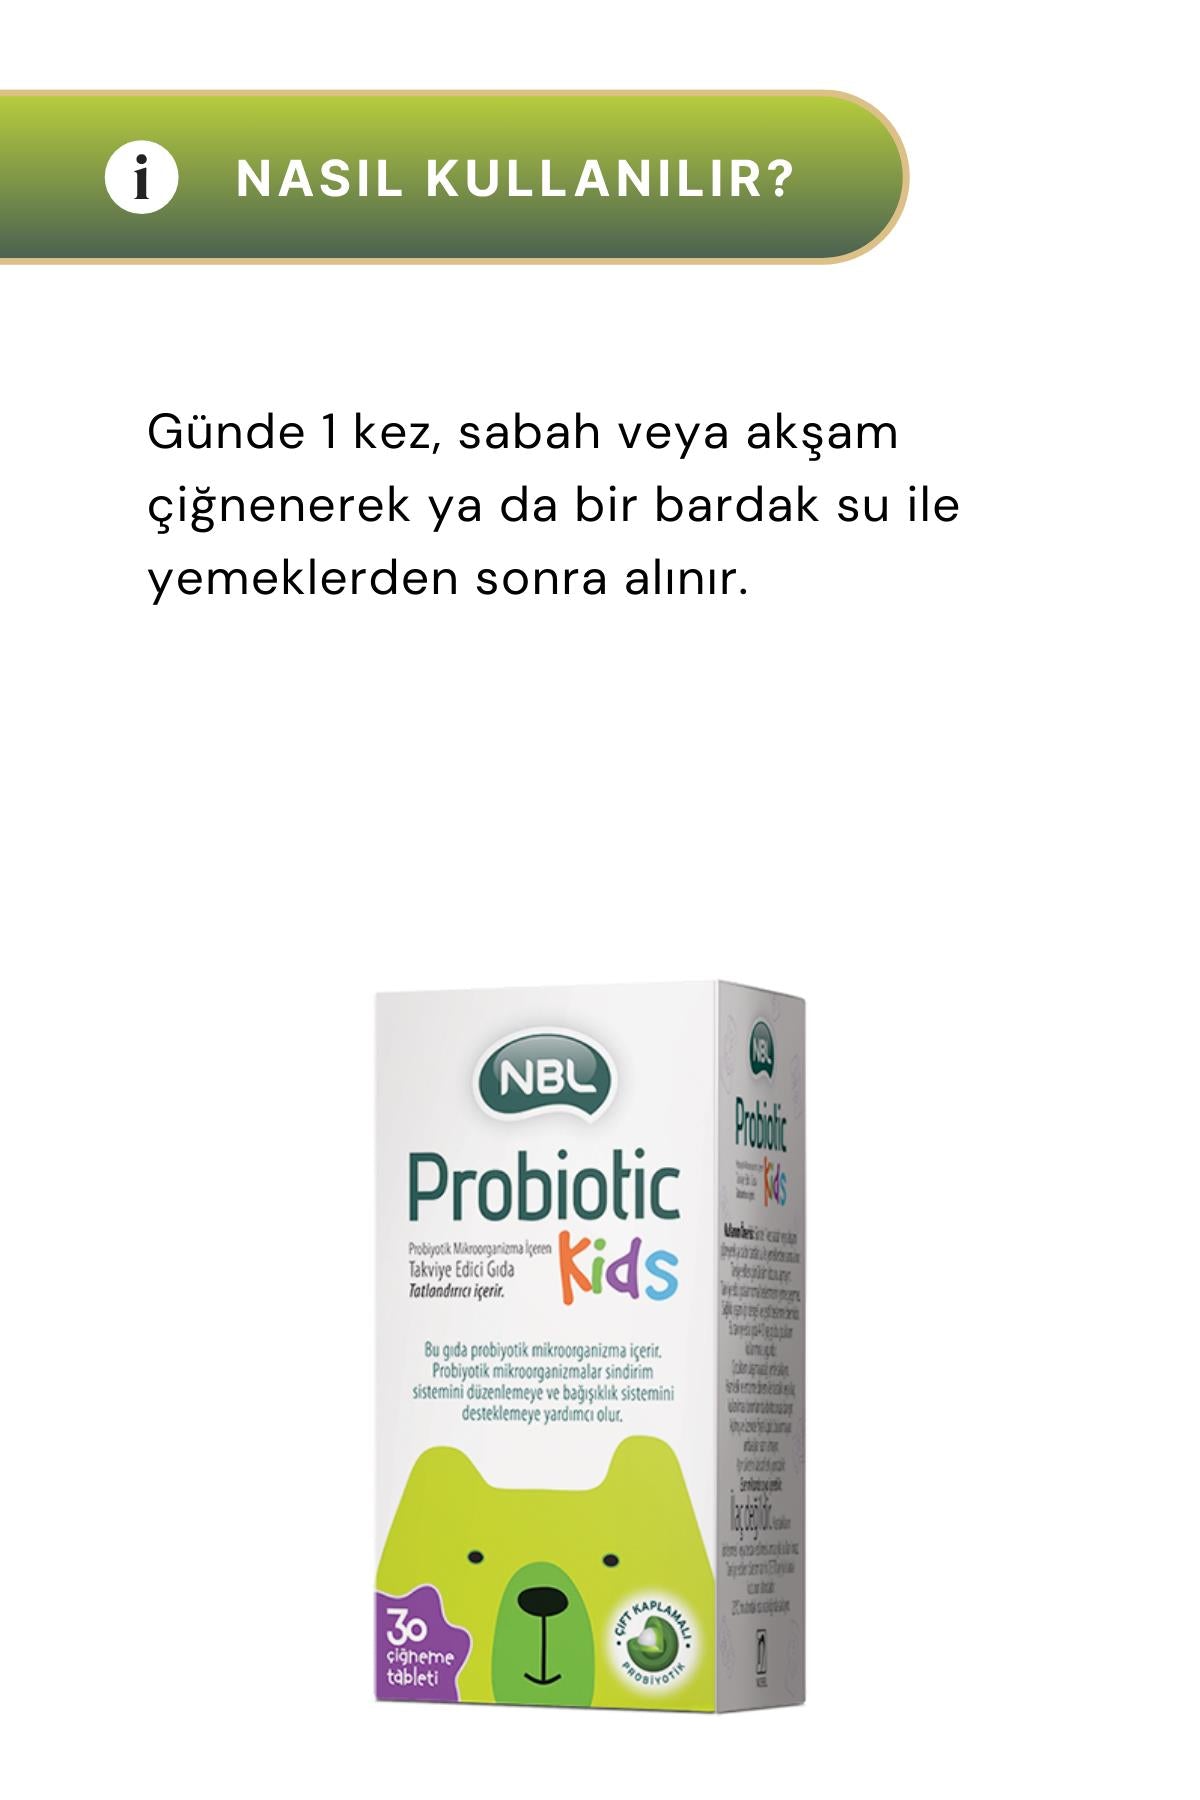 NBL Probiotic Kids 30 Çiğneme Tableti 2'li Paket